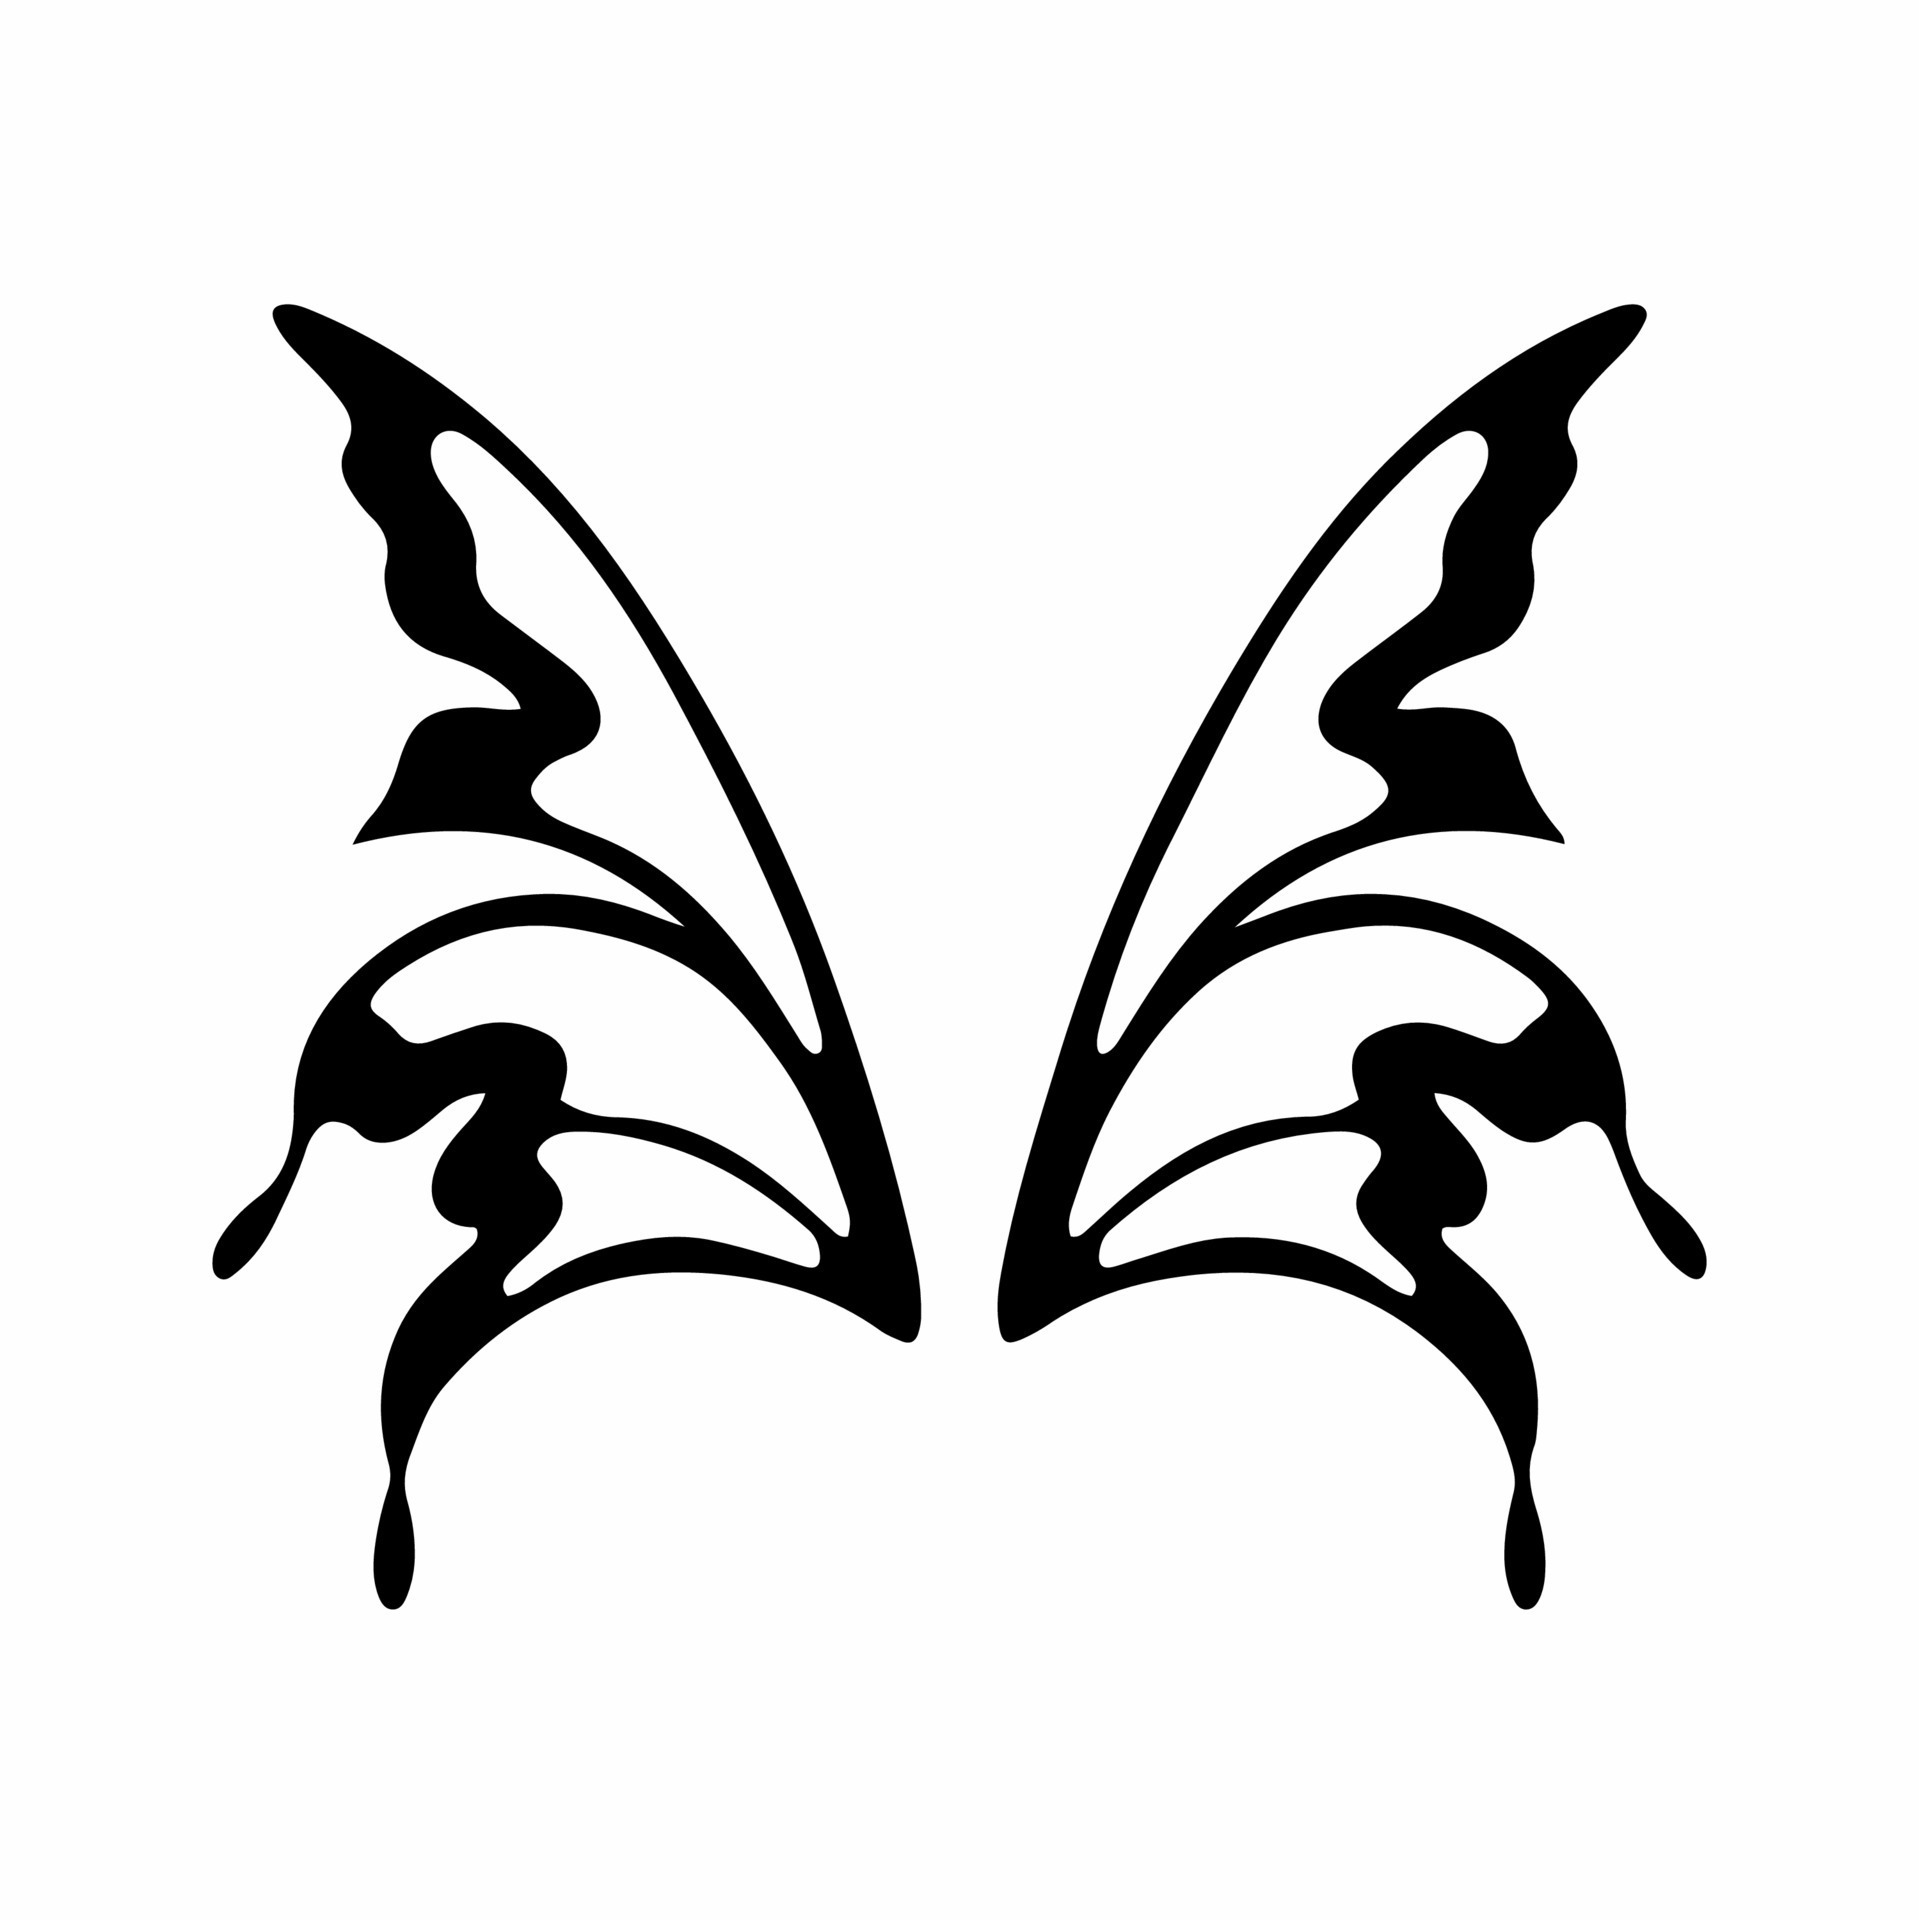 Tribal Fairy Wings Logo Tattoo Design Stencil Vector Illustration  20313977 Vector Art at Vecteezy